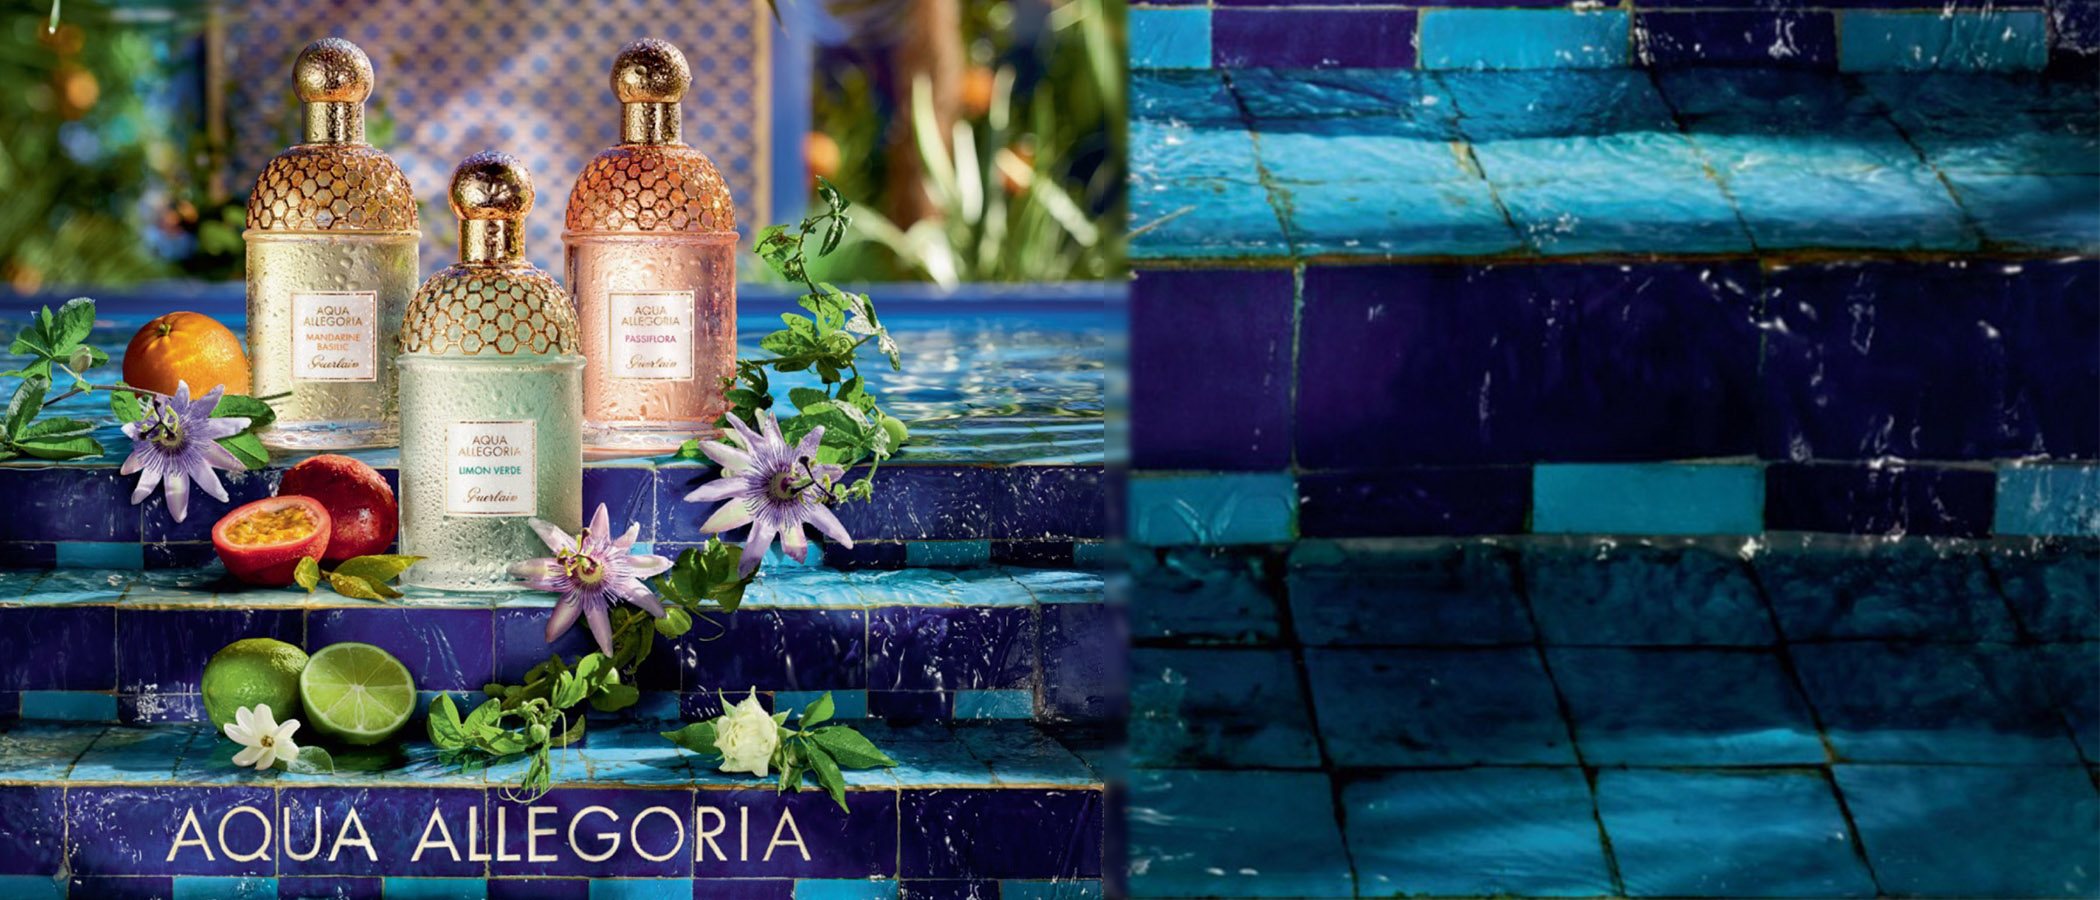 Guerlain lanza 'Aqua Allegoria Passiflora' acompañada de tres reediciones de la línea 'Aqua Allegoria'